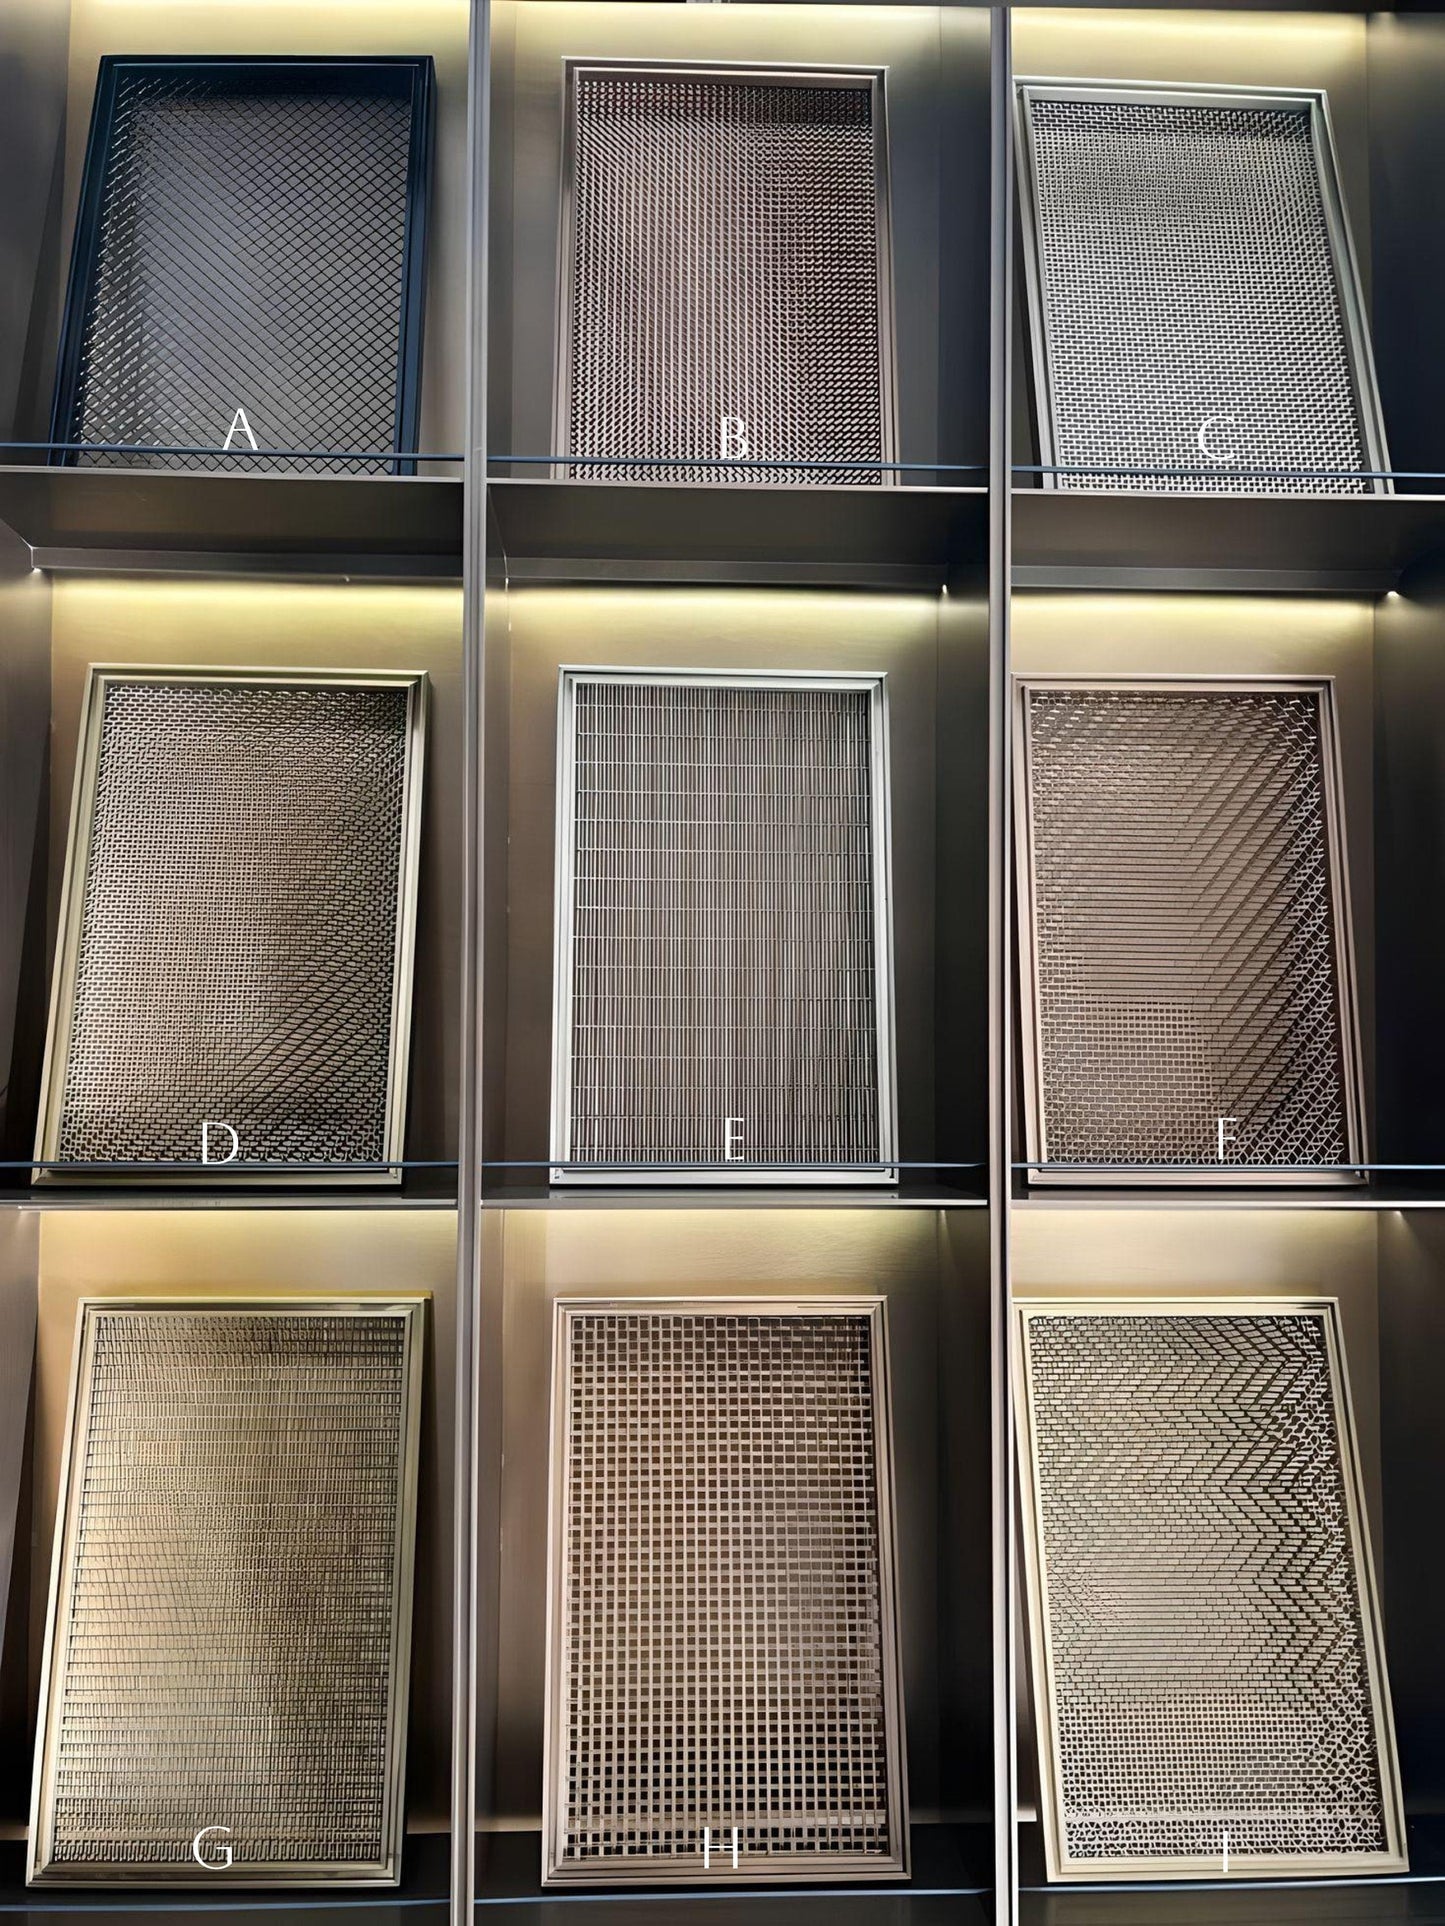 Sample Pack: Stainless Steel Mesh Panels - Modern Design